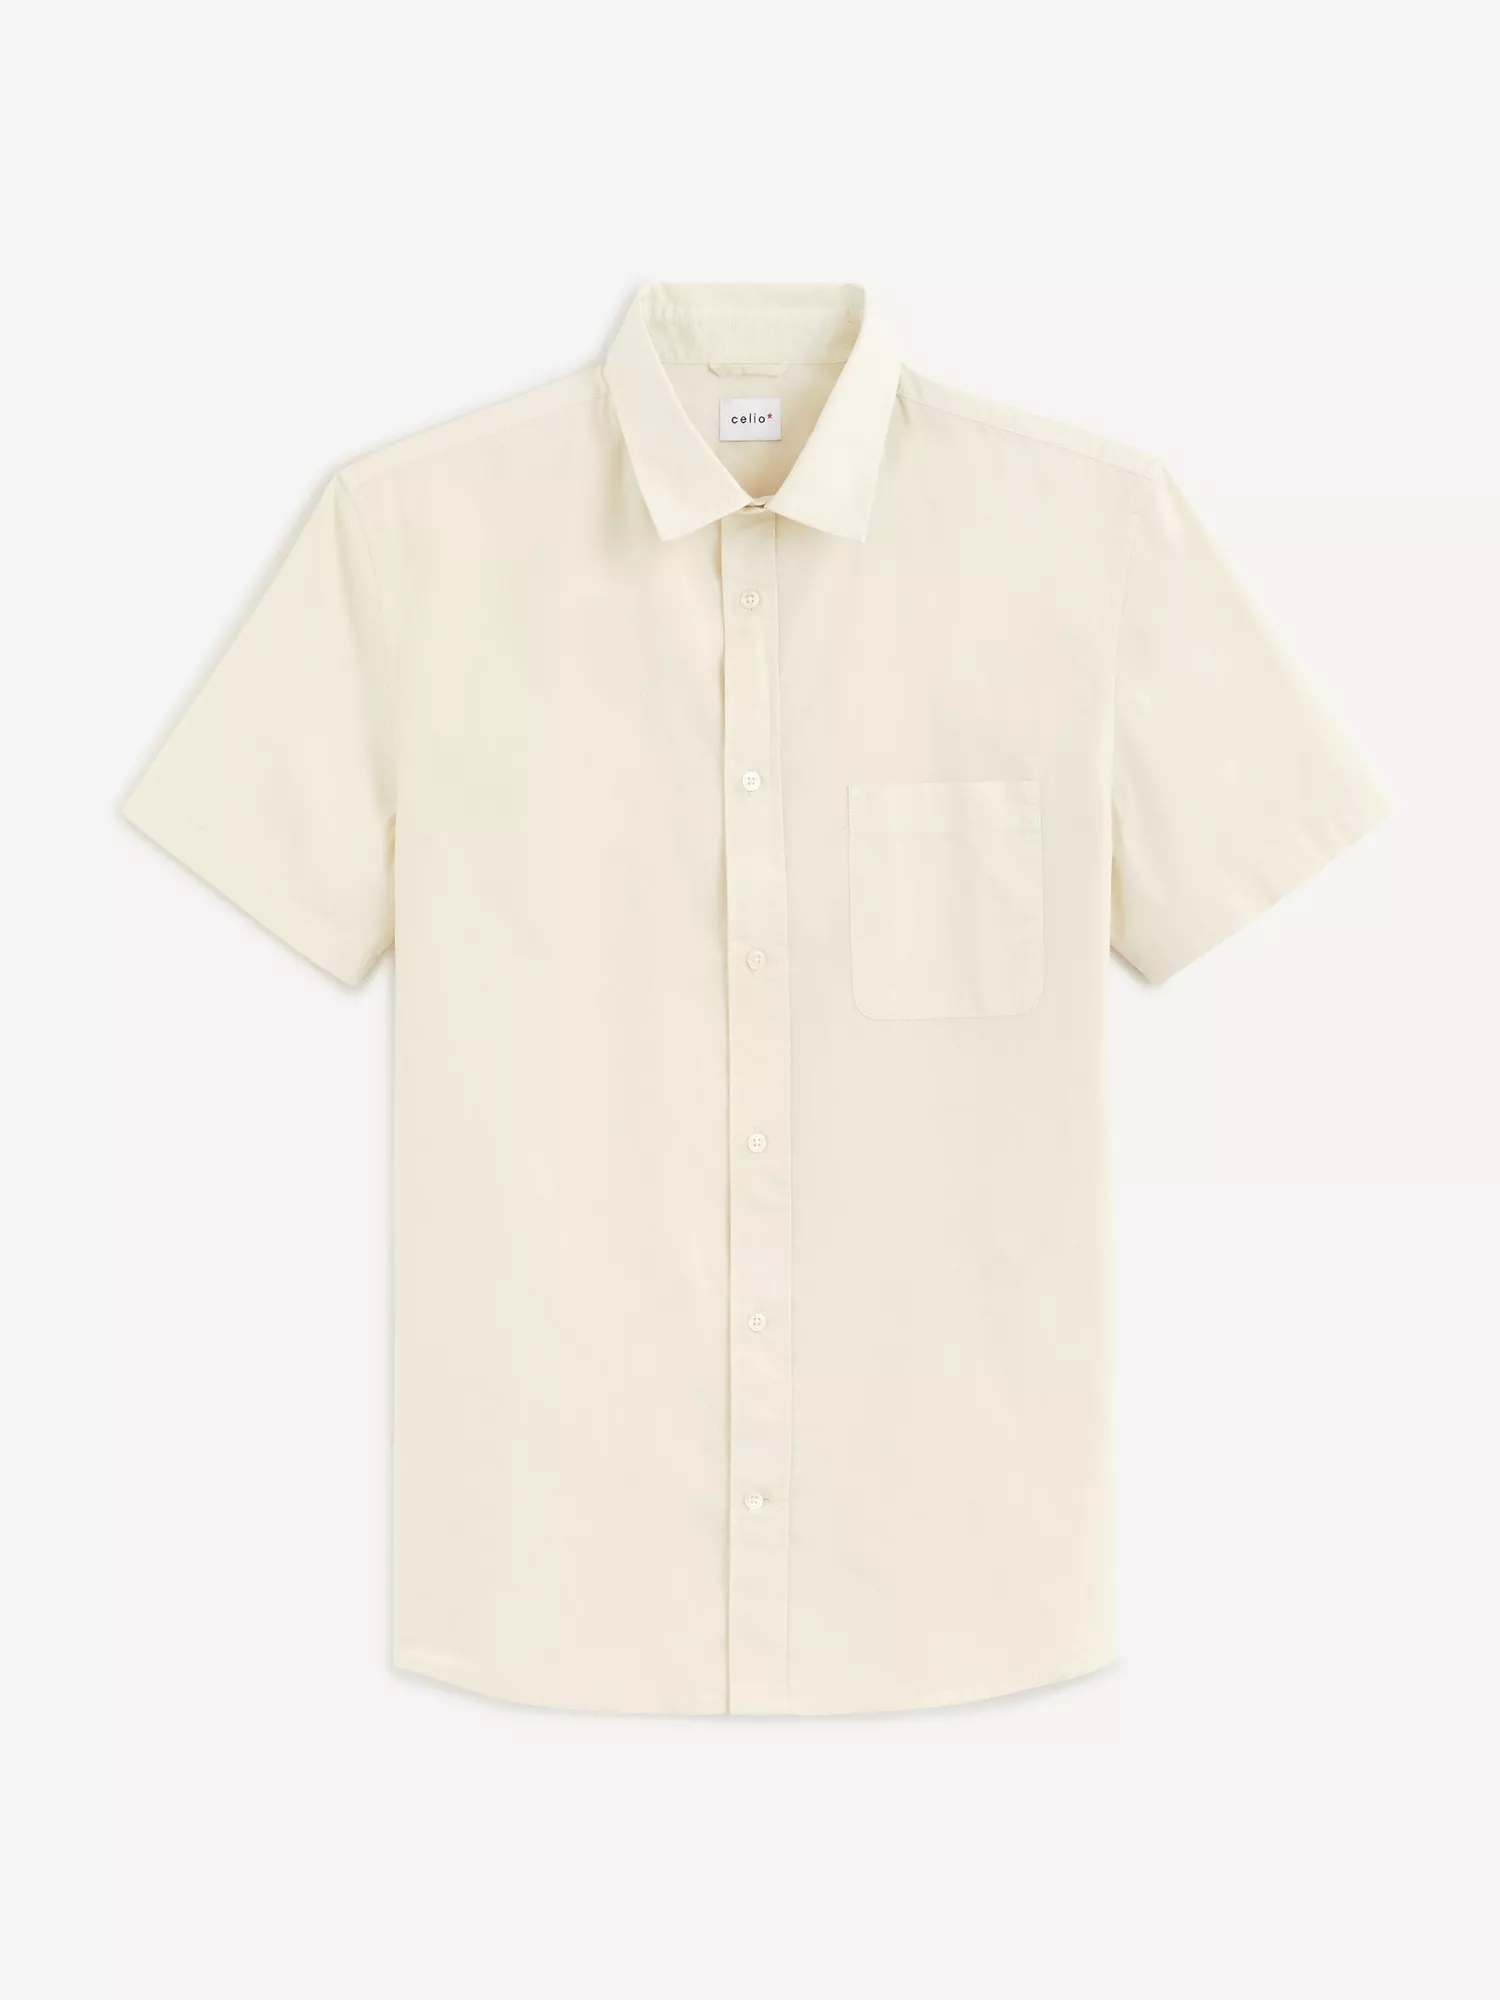 Bavlněná košile Valight s krátkým rukávem (4)